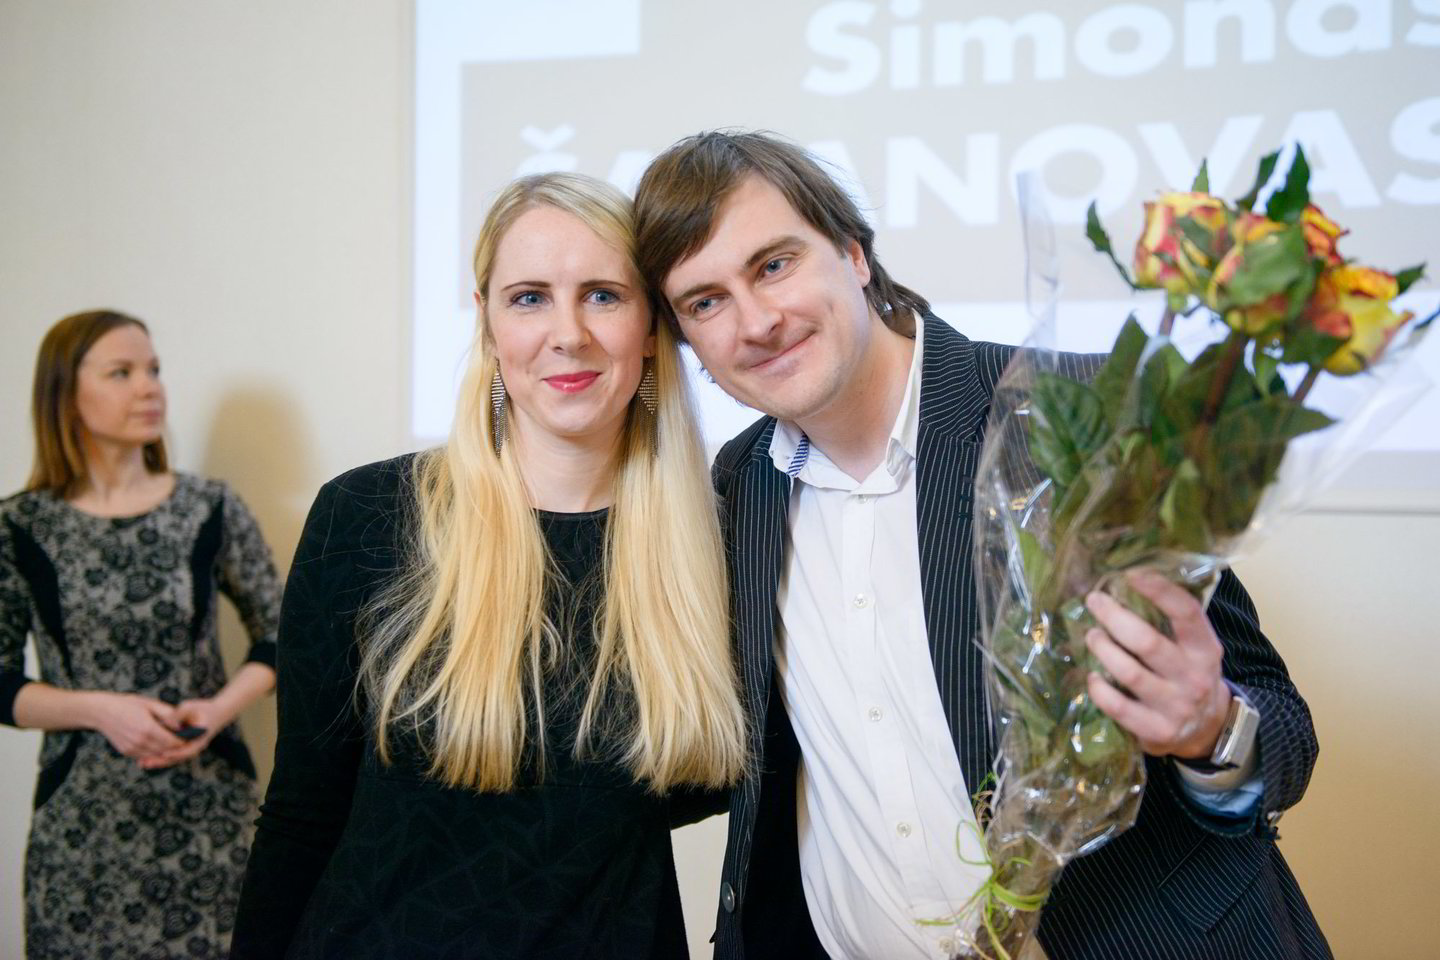  Vos pradėjęs dirbti po 3 metų savo mokykloje S.Šabanovas buvo išrinktas metų mokytoju. Nuotraukoje – su žmona Aiste. <br> S.Stacevičiaus nuotr. 